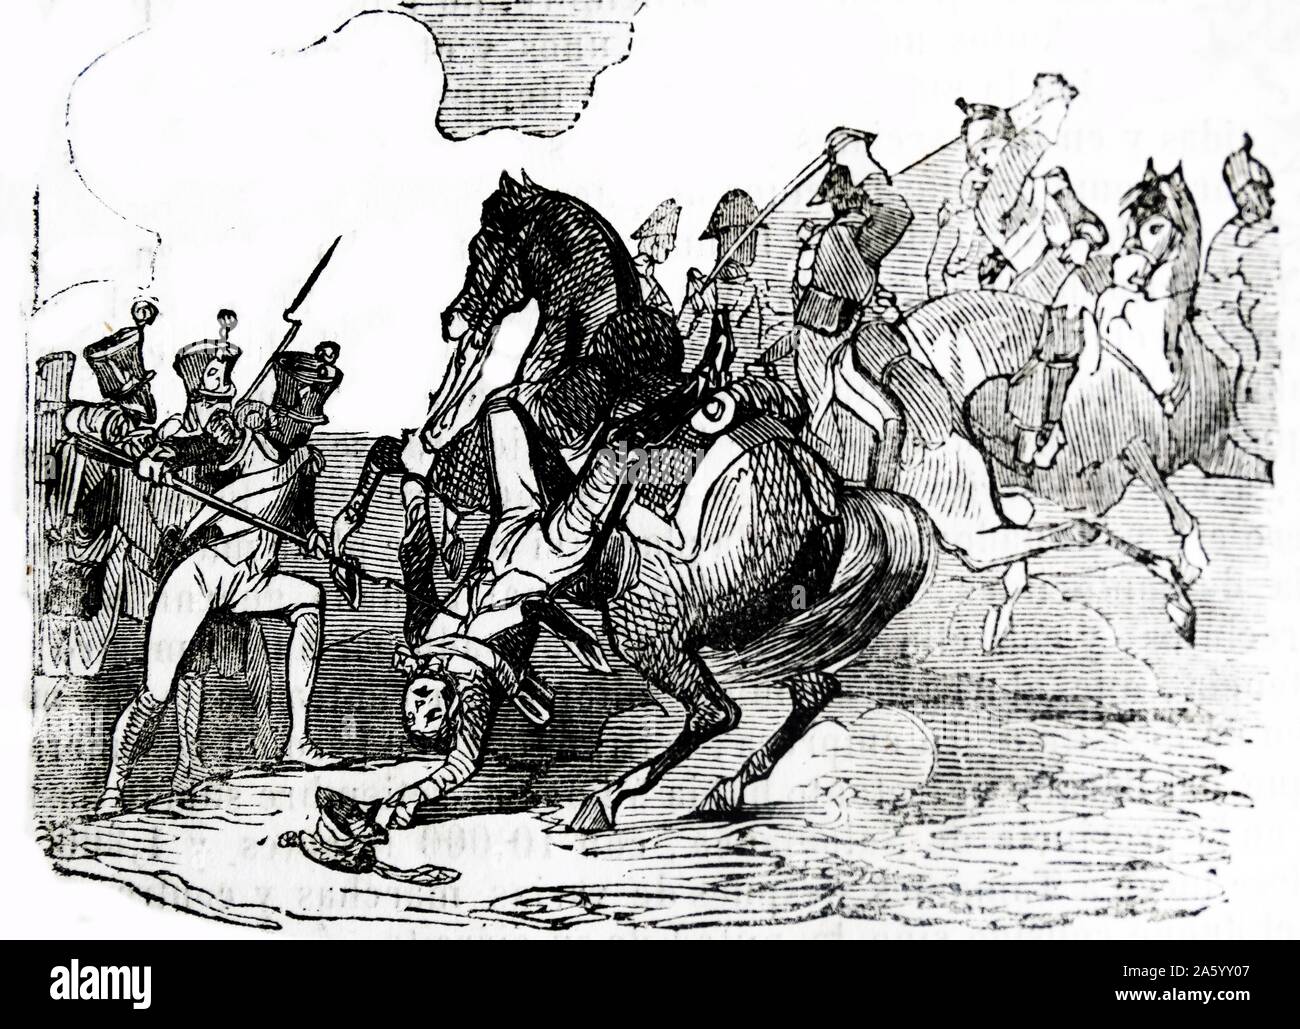 Darstellung der Schlacht Tamames, eine Gemeinde in der Provinz Salamanca, Kastilien und León, Spanien-Gravur. Datiert 1812 Stockfoto